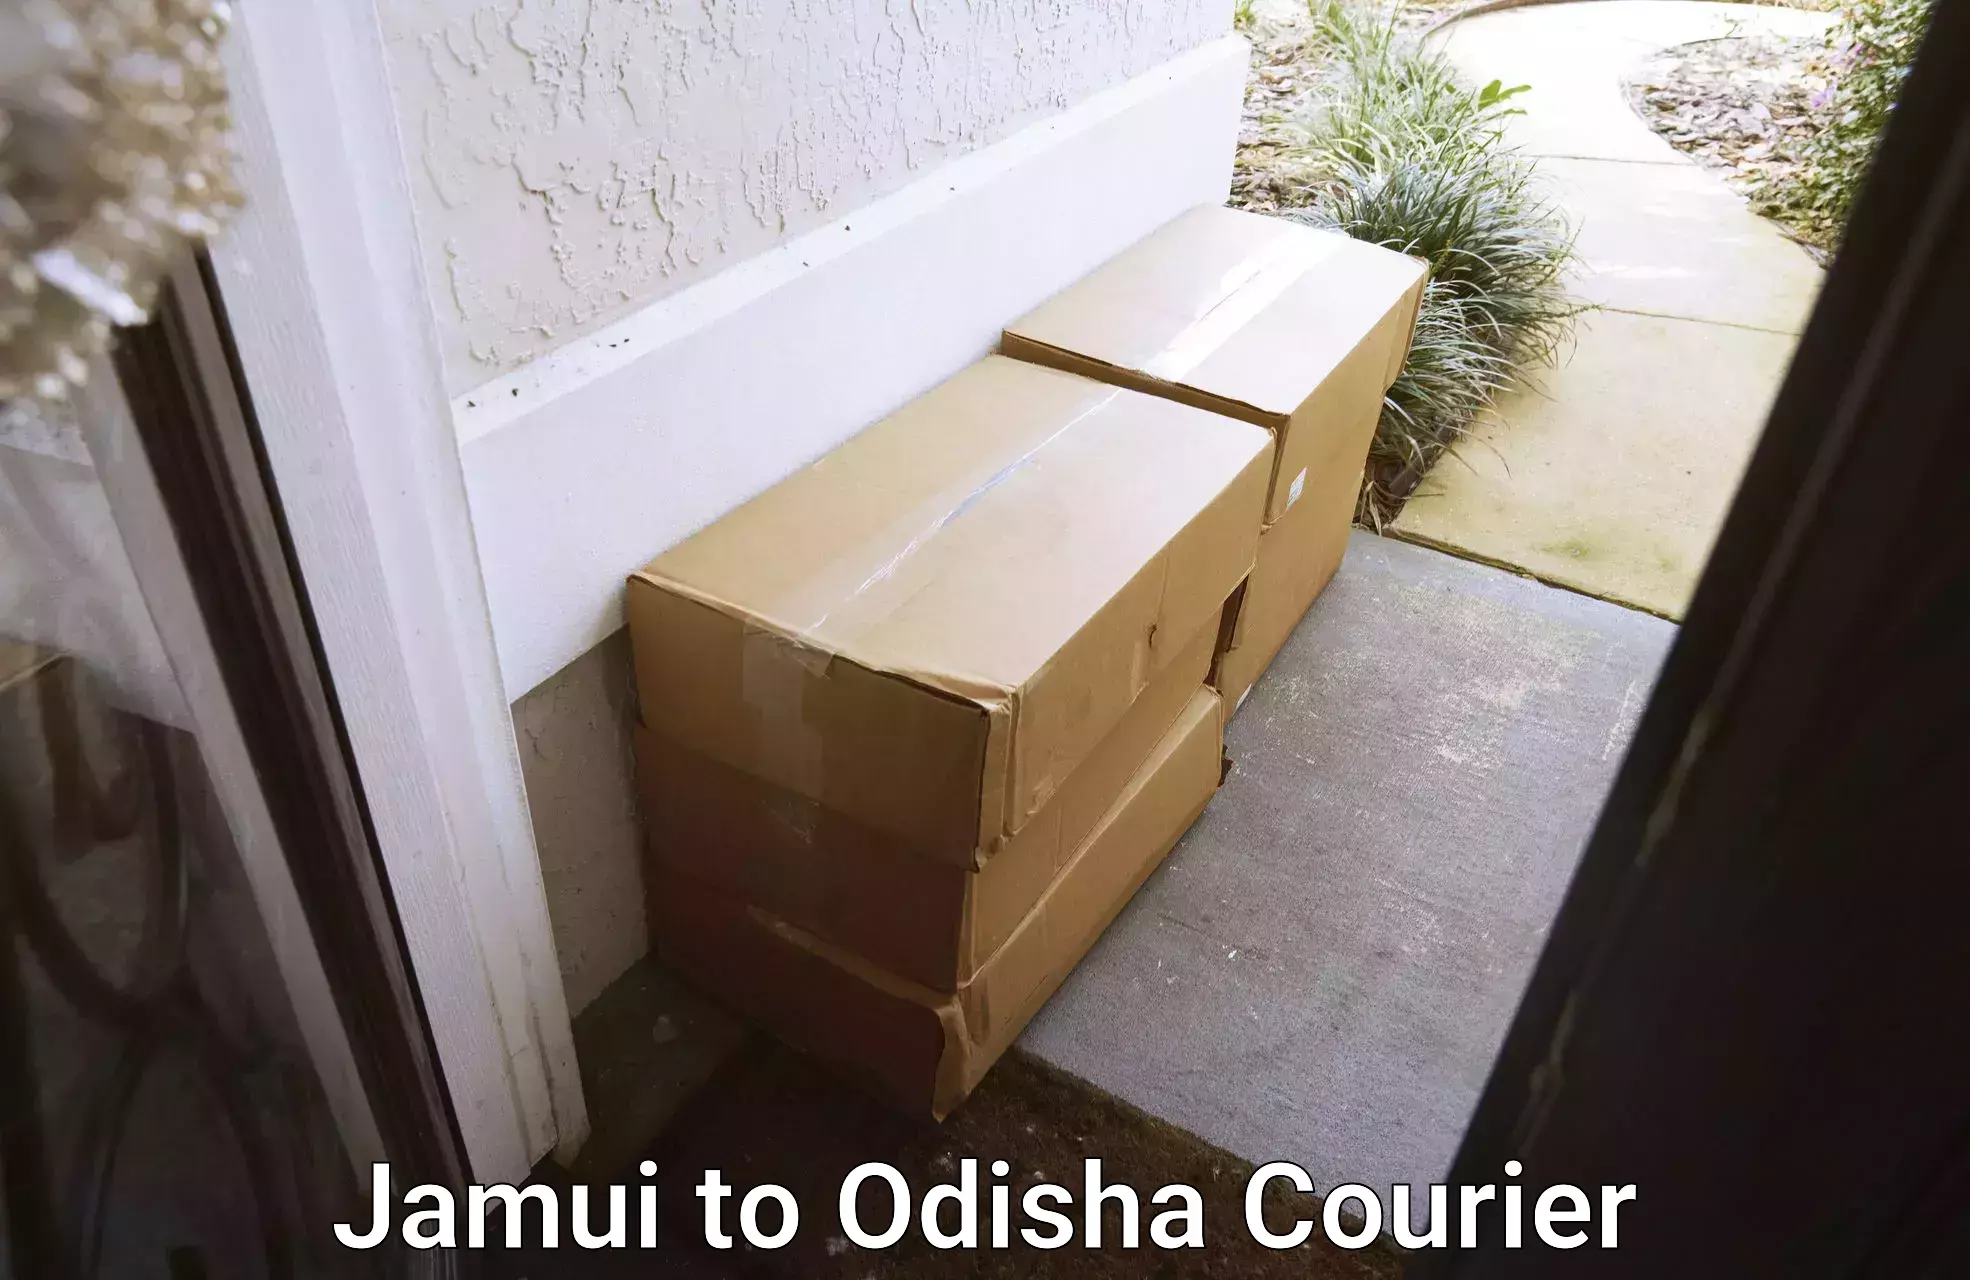 Efficient moving company Jamui to Tikiri